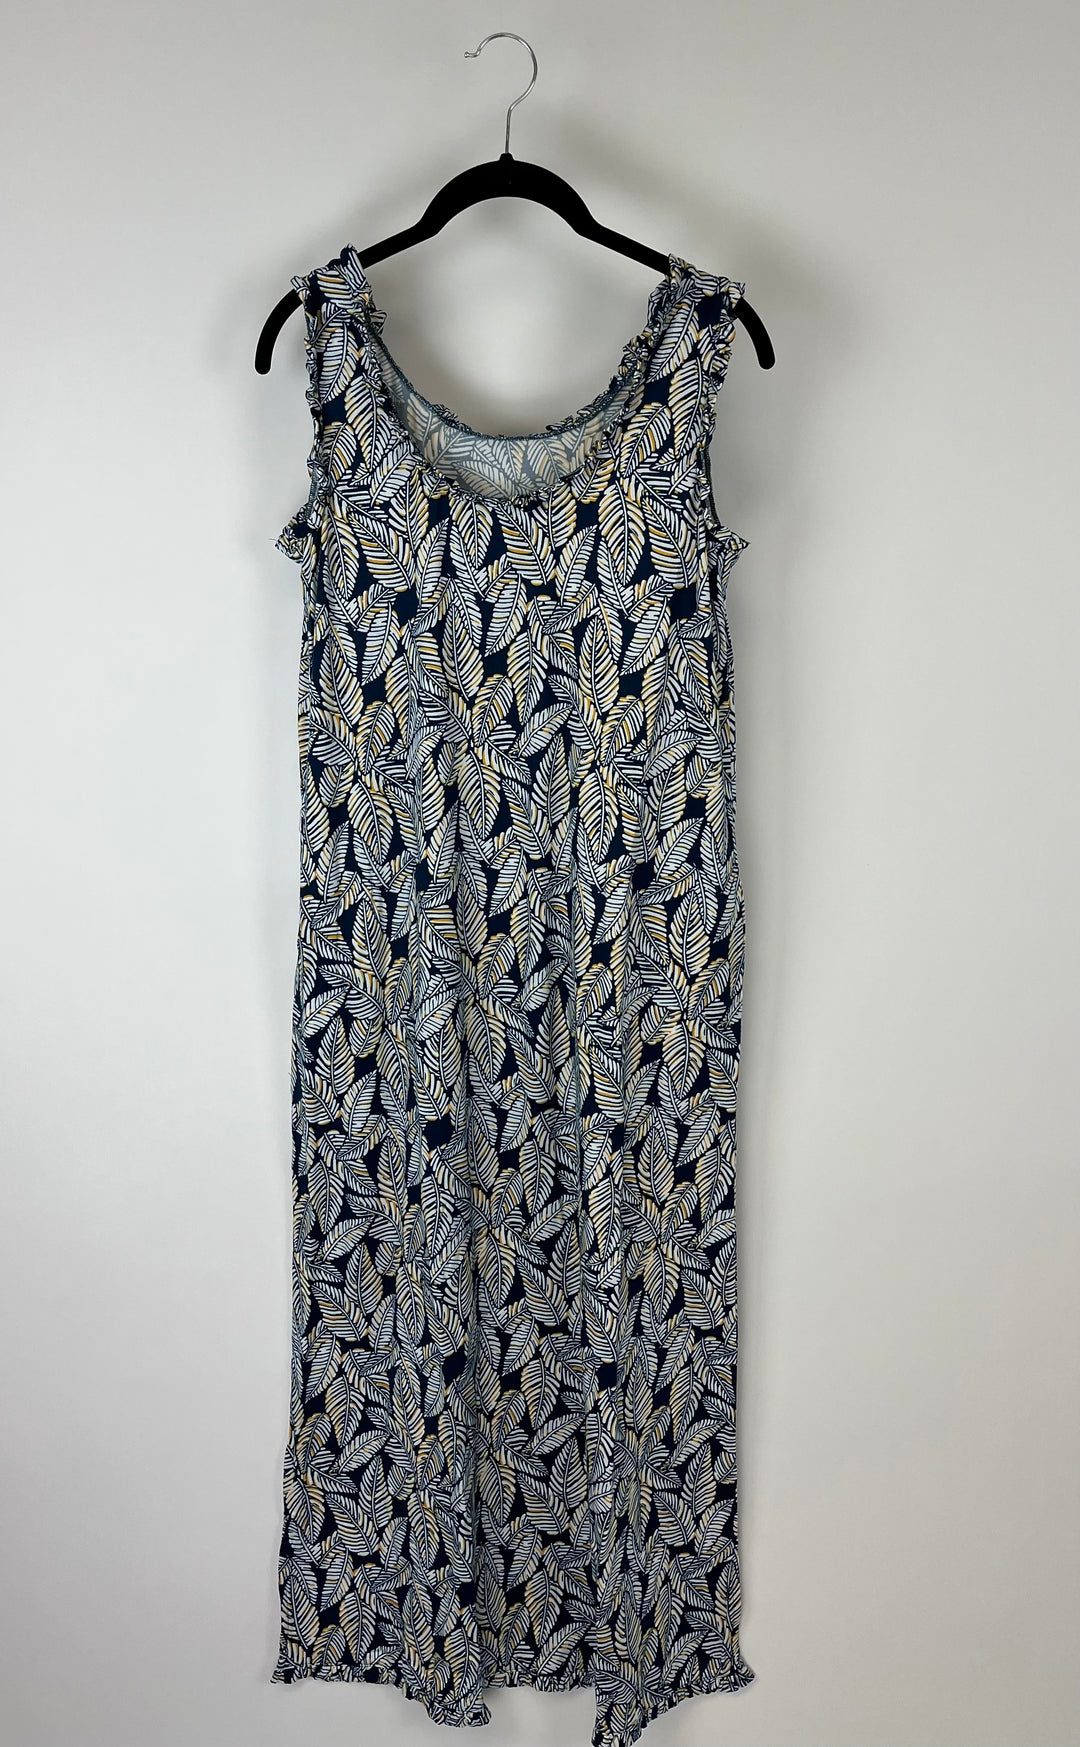 Navy Blue Leaf Print Maxi Dress - Size 6/8